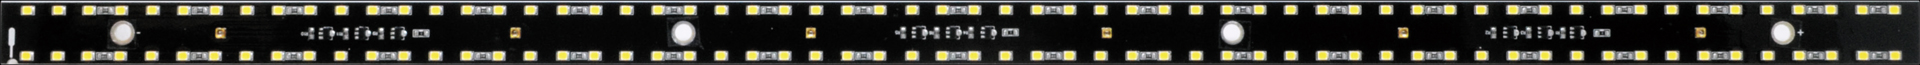 zen acid домашнее животное домашнее животное Zone балка модель solaliumUV LED замена основа доска 700 реальная (настоящая) вещь изображение 